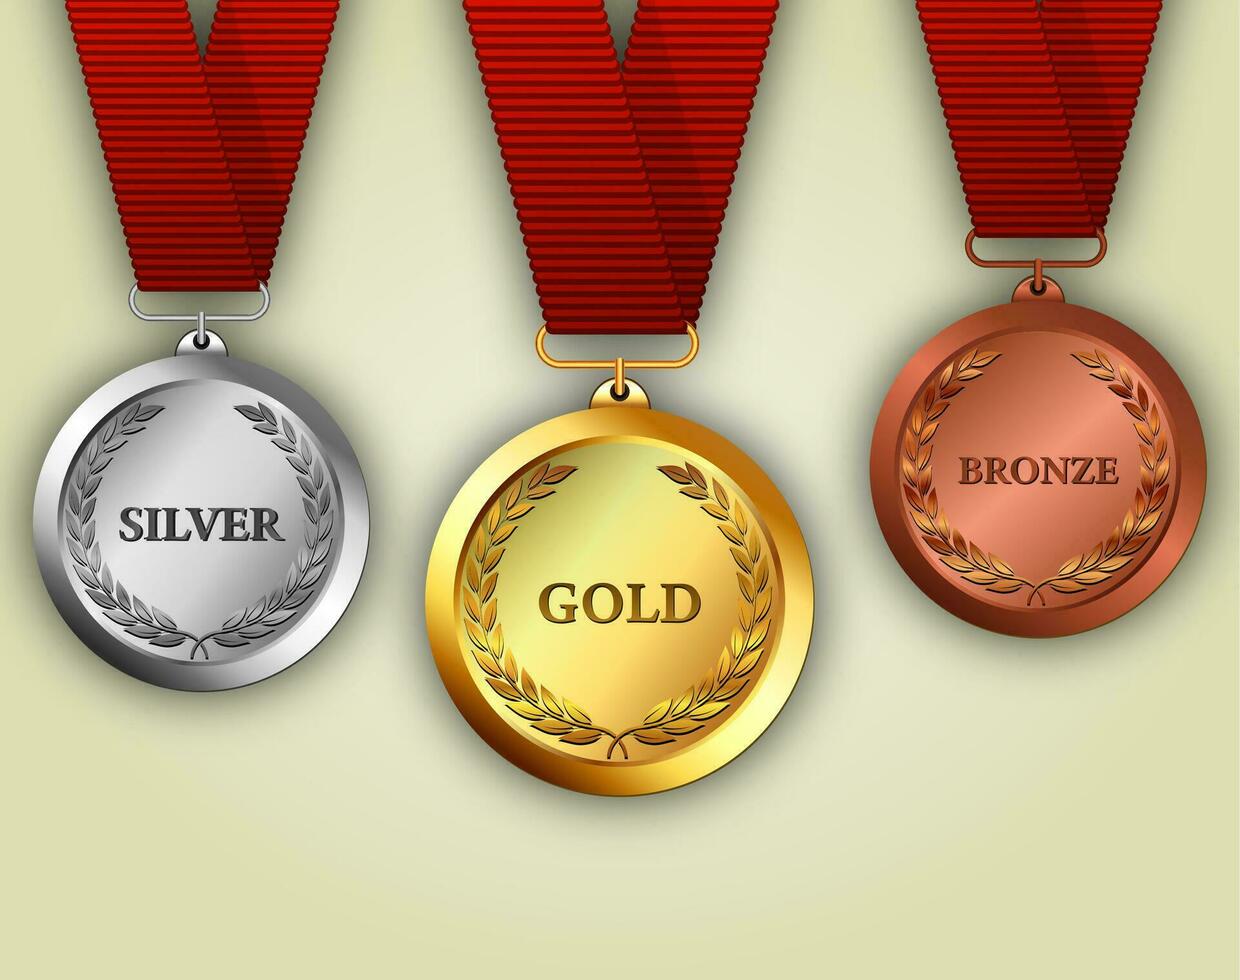 conjunto de medalhas de ouro, prata e bronze vetor